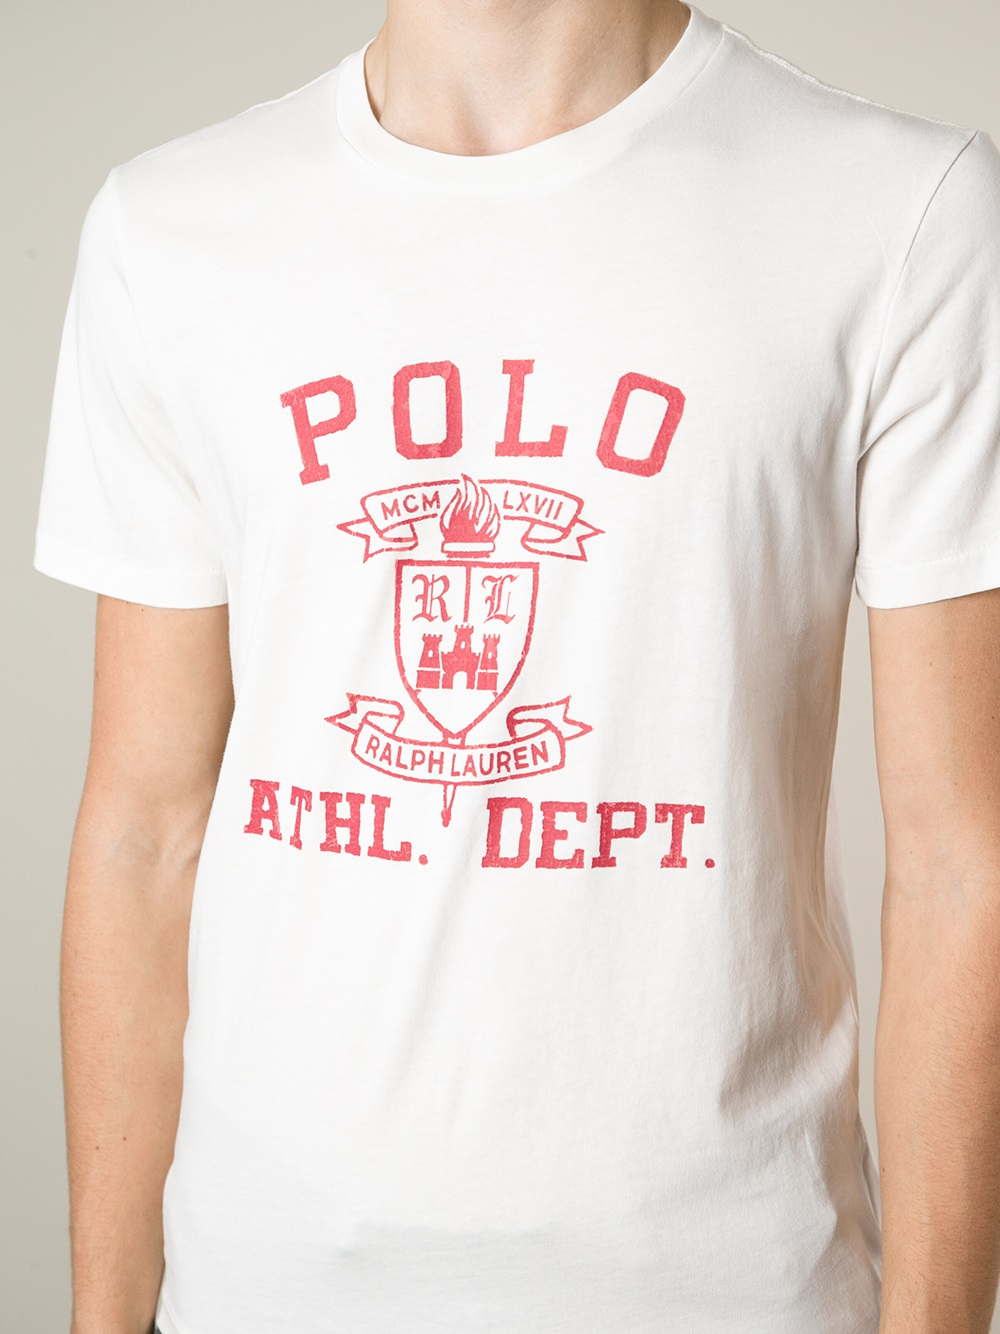 Polo Ralph Lauren Brand Print T-Shirt in White for Men - Lyst